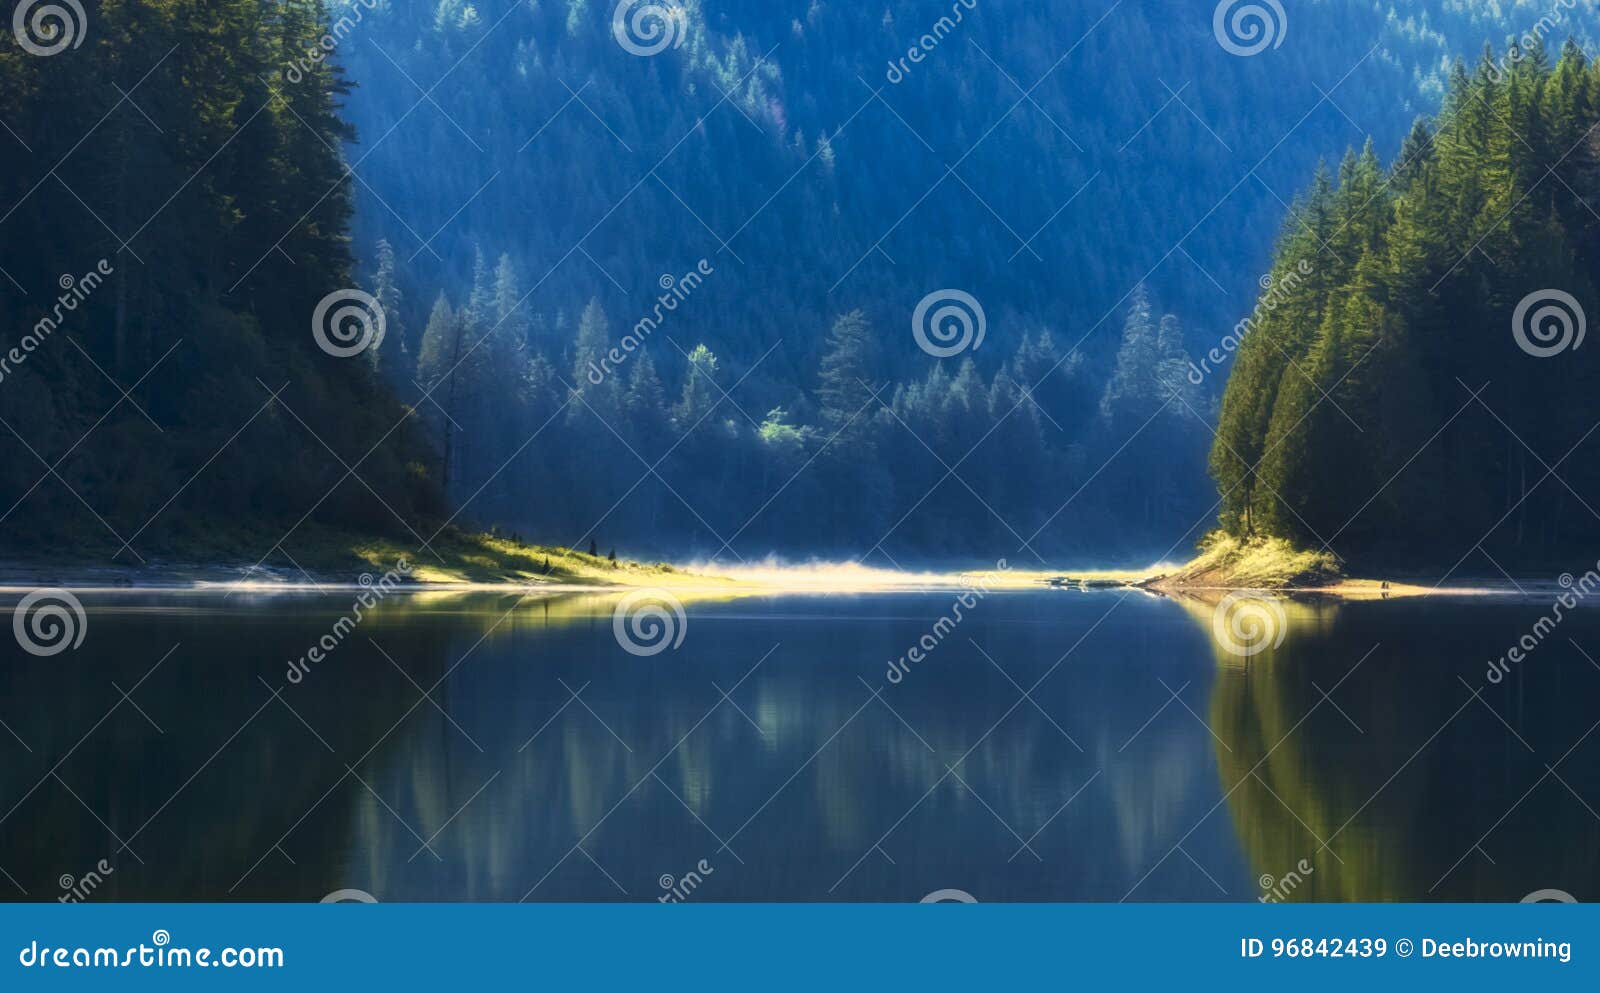 dreamlike focus of merrill lake